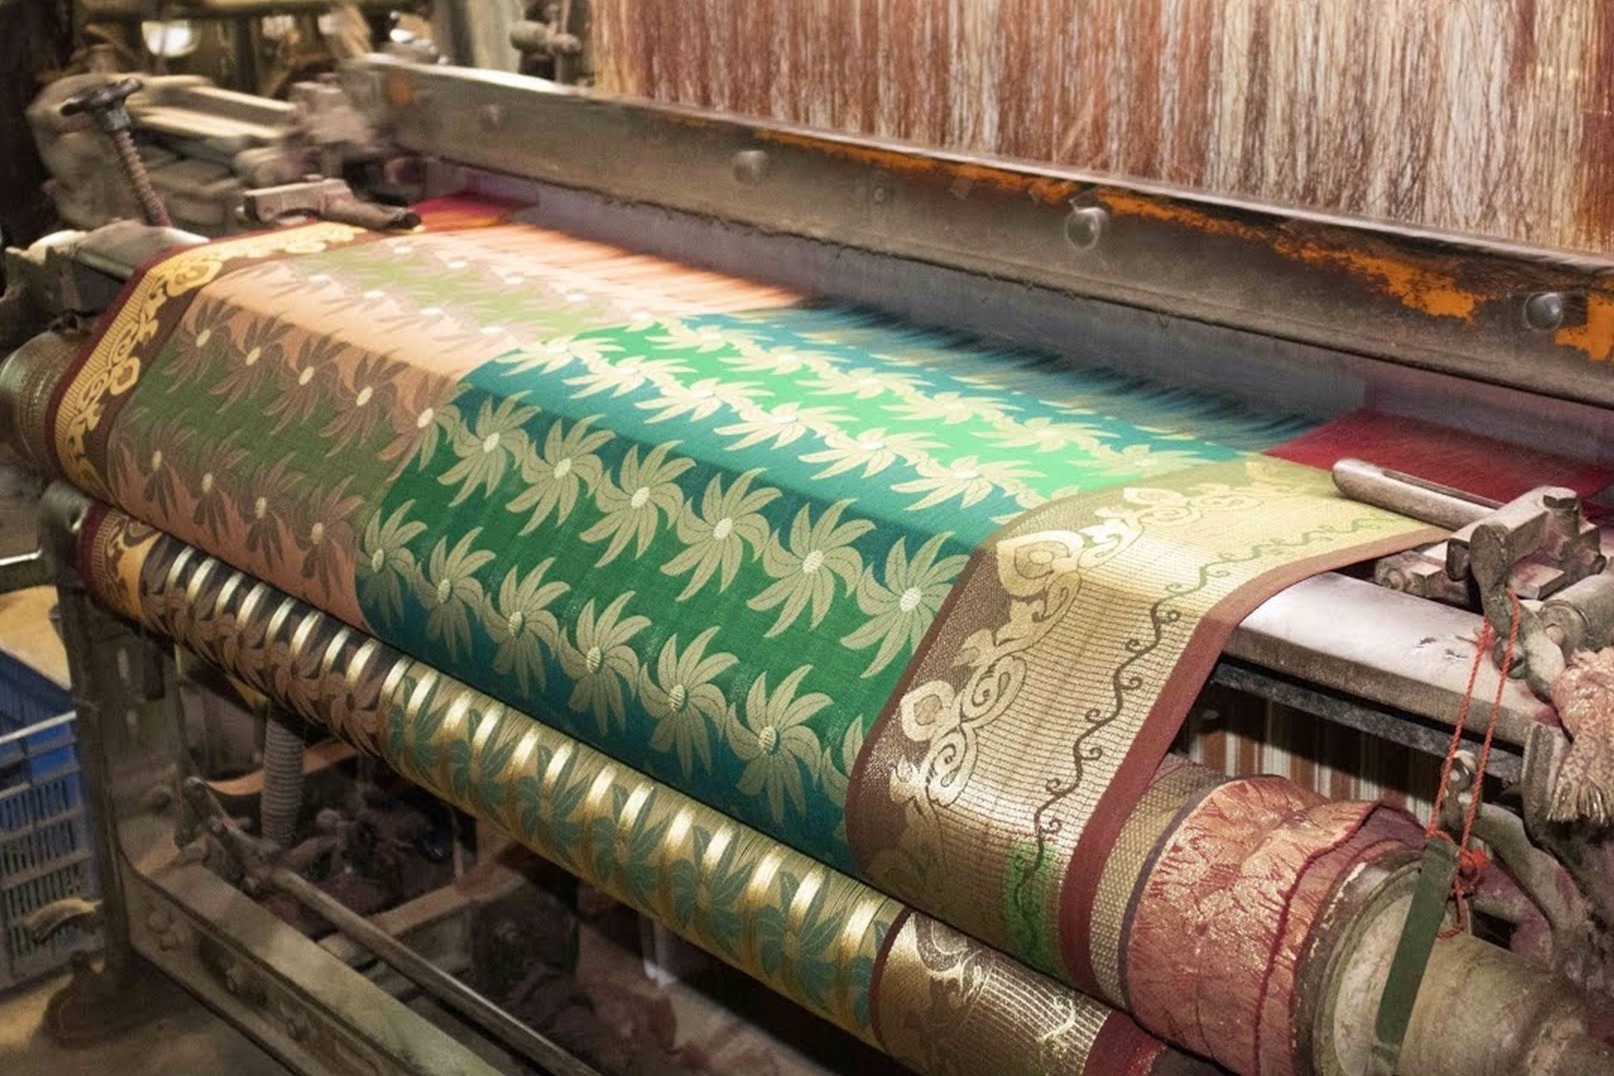 印度织布厂实拍,伴随着哒哒哒的机器声,花花绿绿的布就完成了